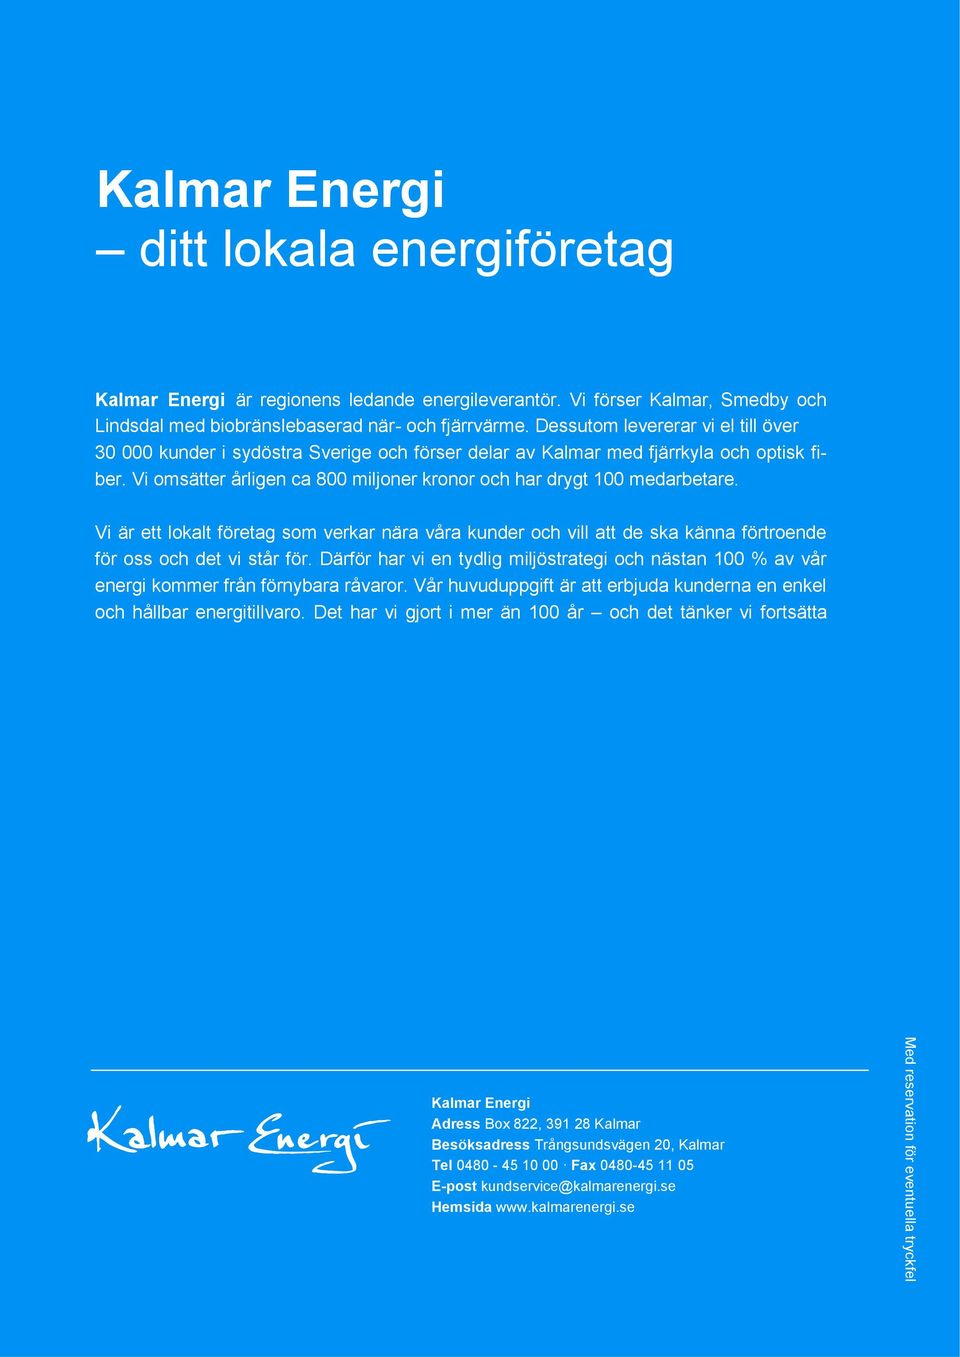 Dessutom levererar vi el till över 30 000 kunder i sydöstra Sverige och förser delar av Kalmar med fjärrkyla och optisk fiber. Vi omsätter årligen ca 800 miljoner kronor och har drygt 100 medarbetare.